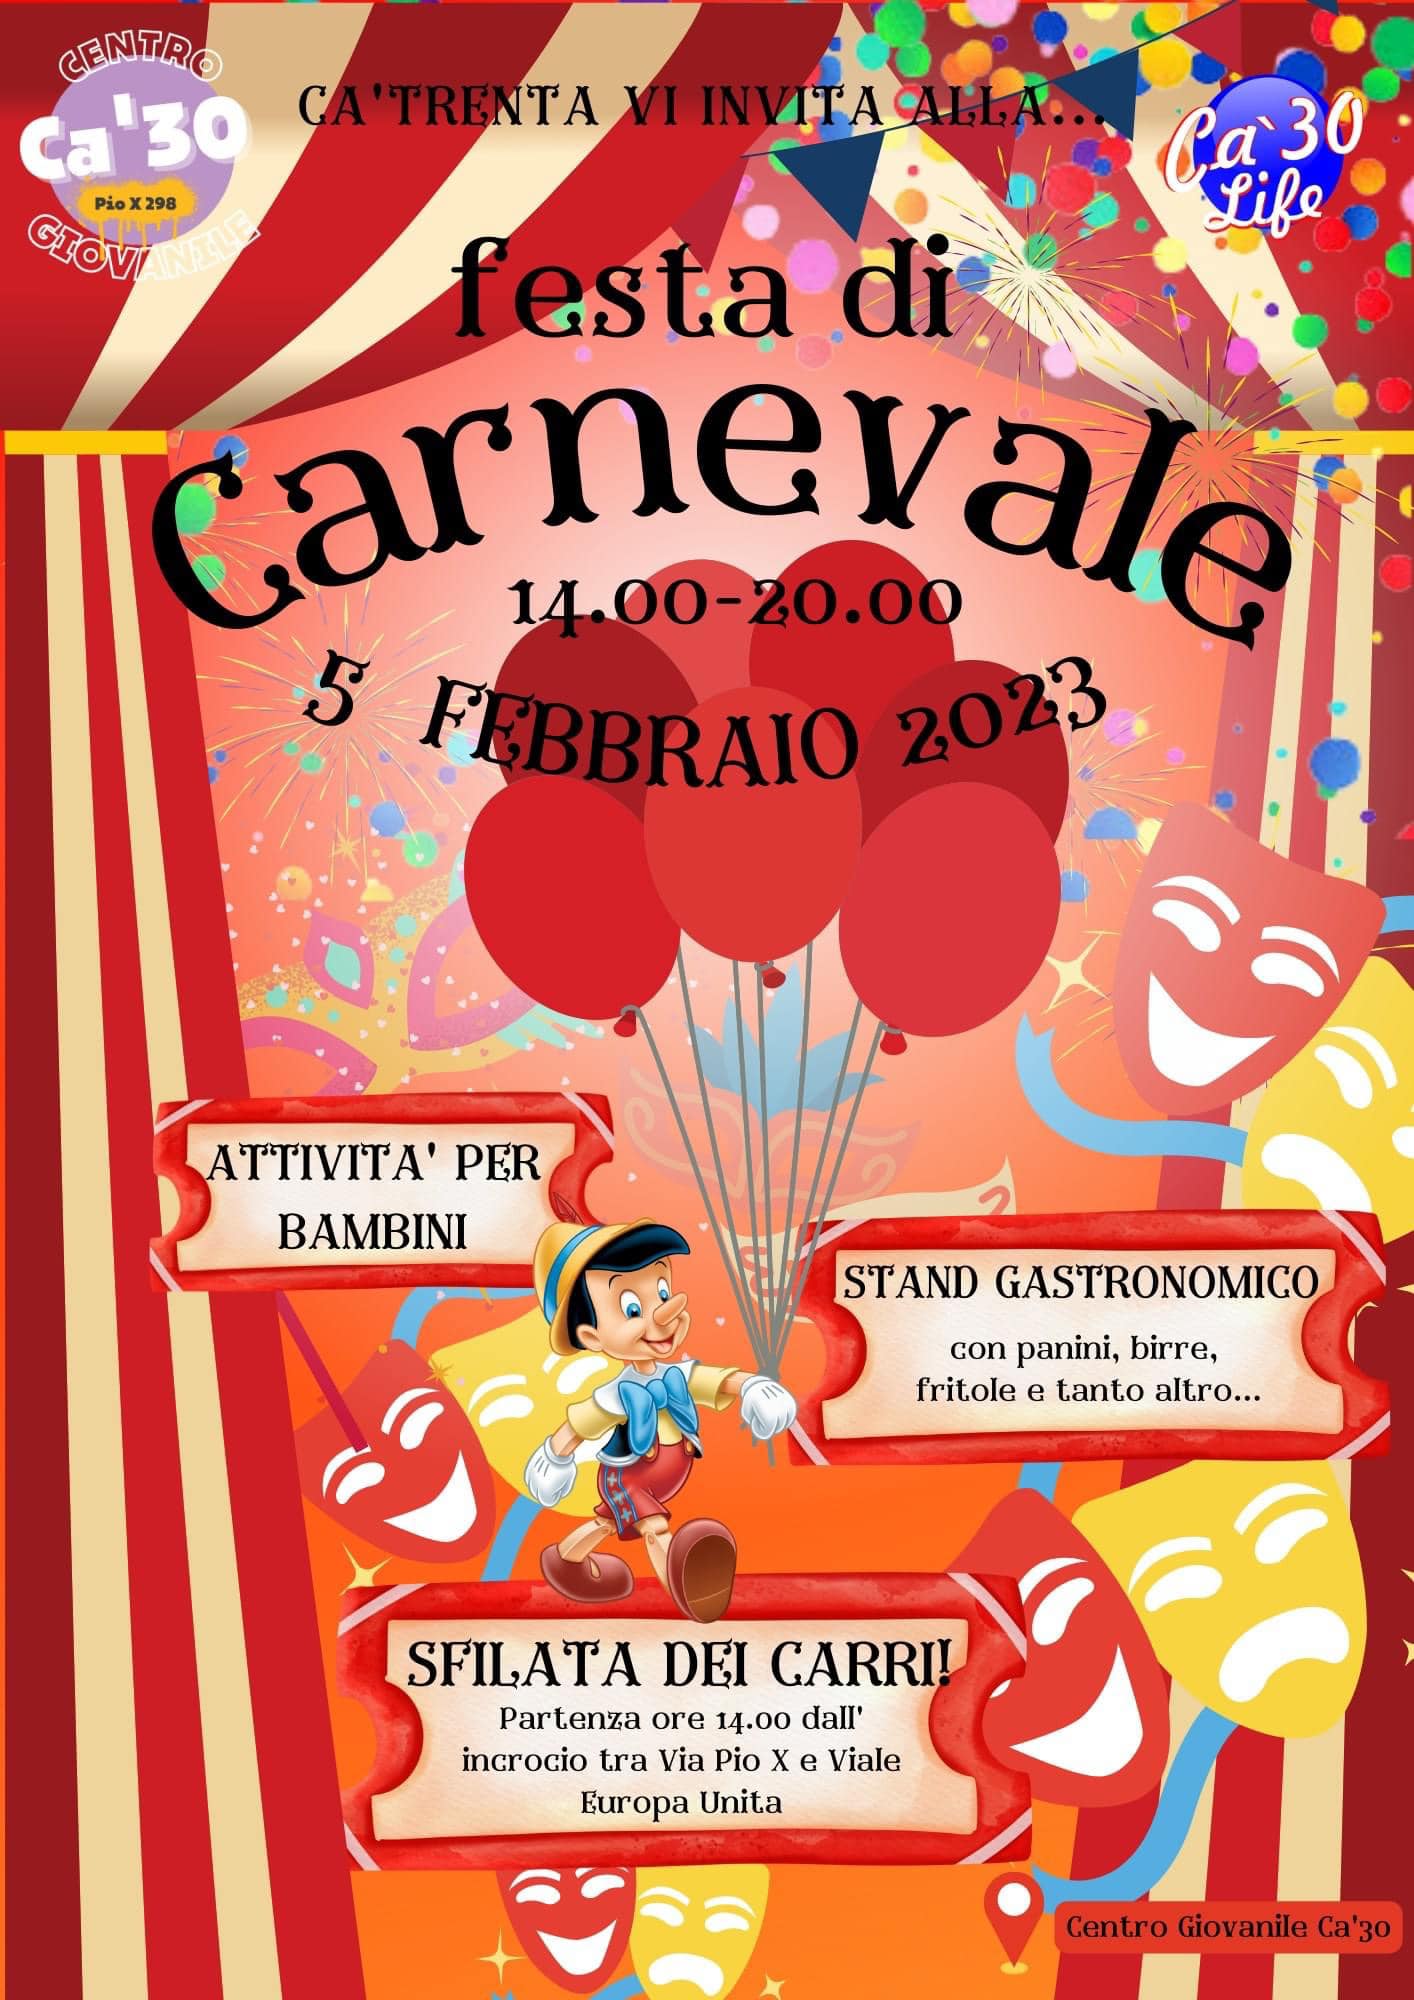 Carnevale a Ca' Trenta